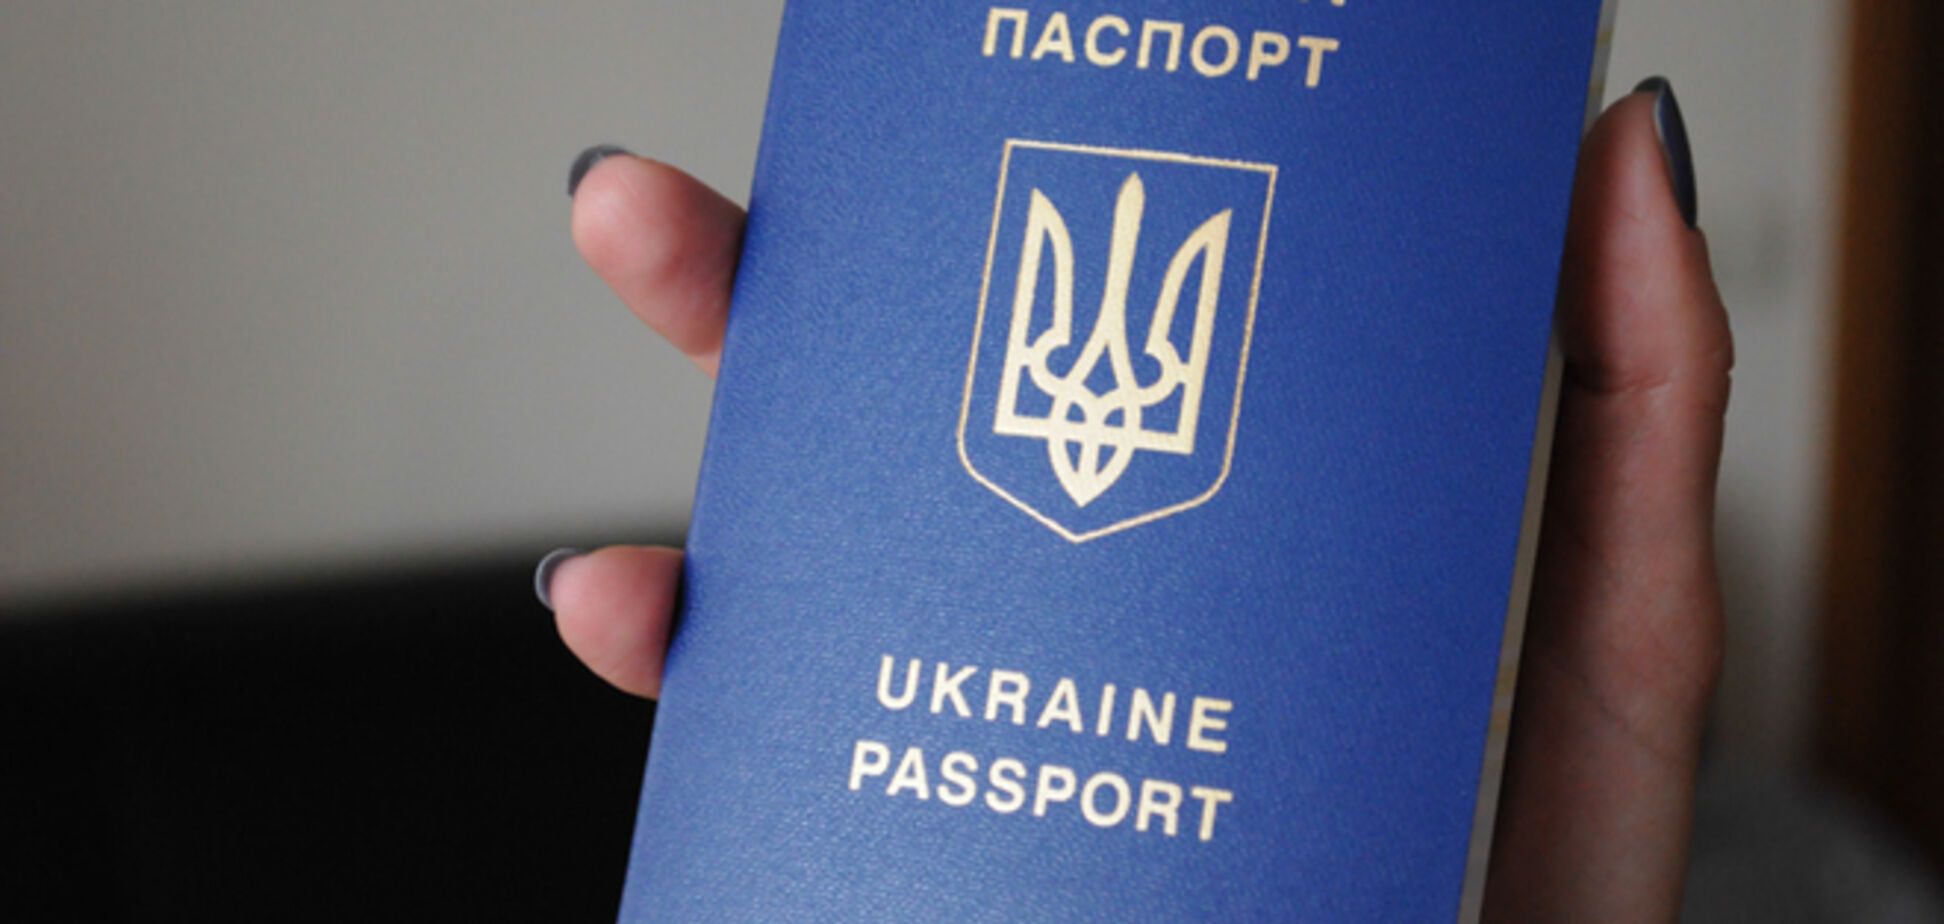 Власти подробно рассказали о биометрических паспортах, которые получат украинцы